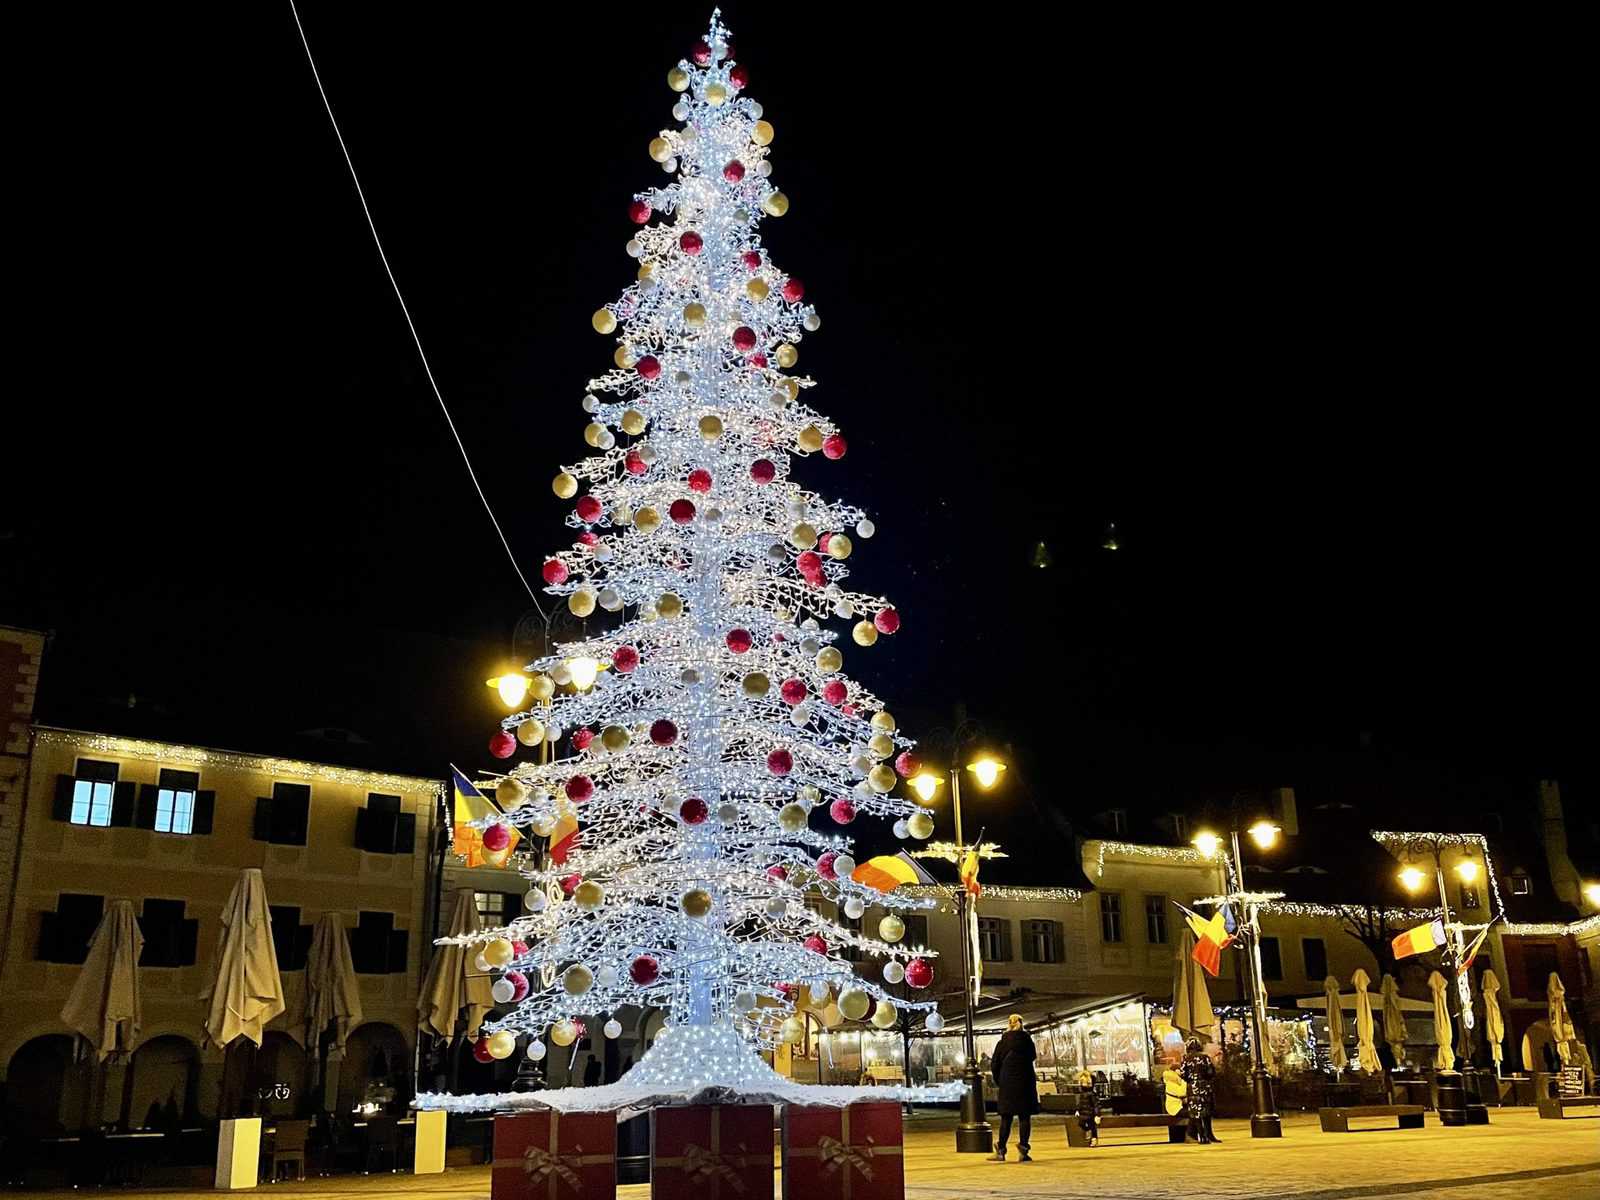 live video: s-au aprins luminile de sărbătoare în centrul sibiului - a început și târgul de crăciun